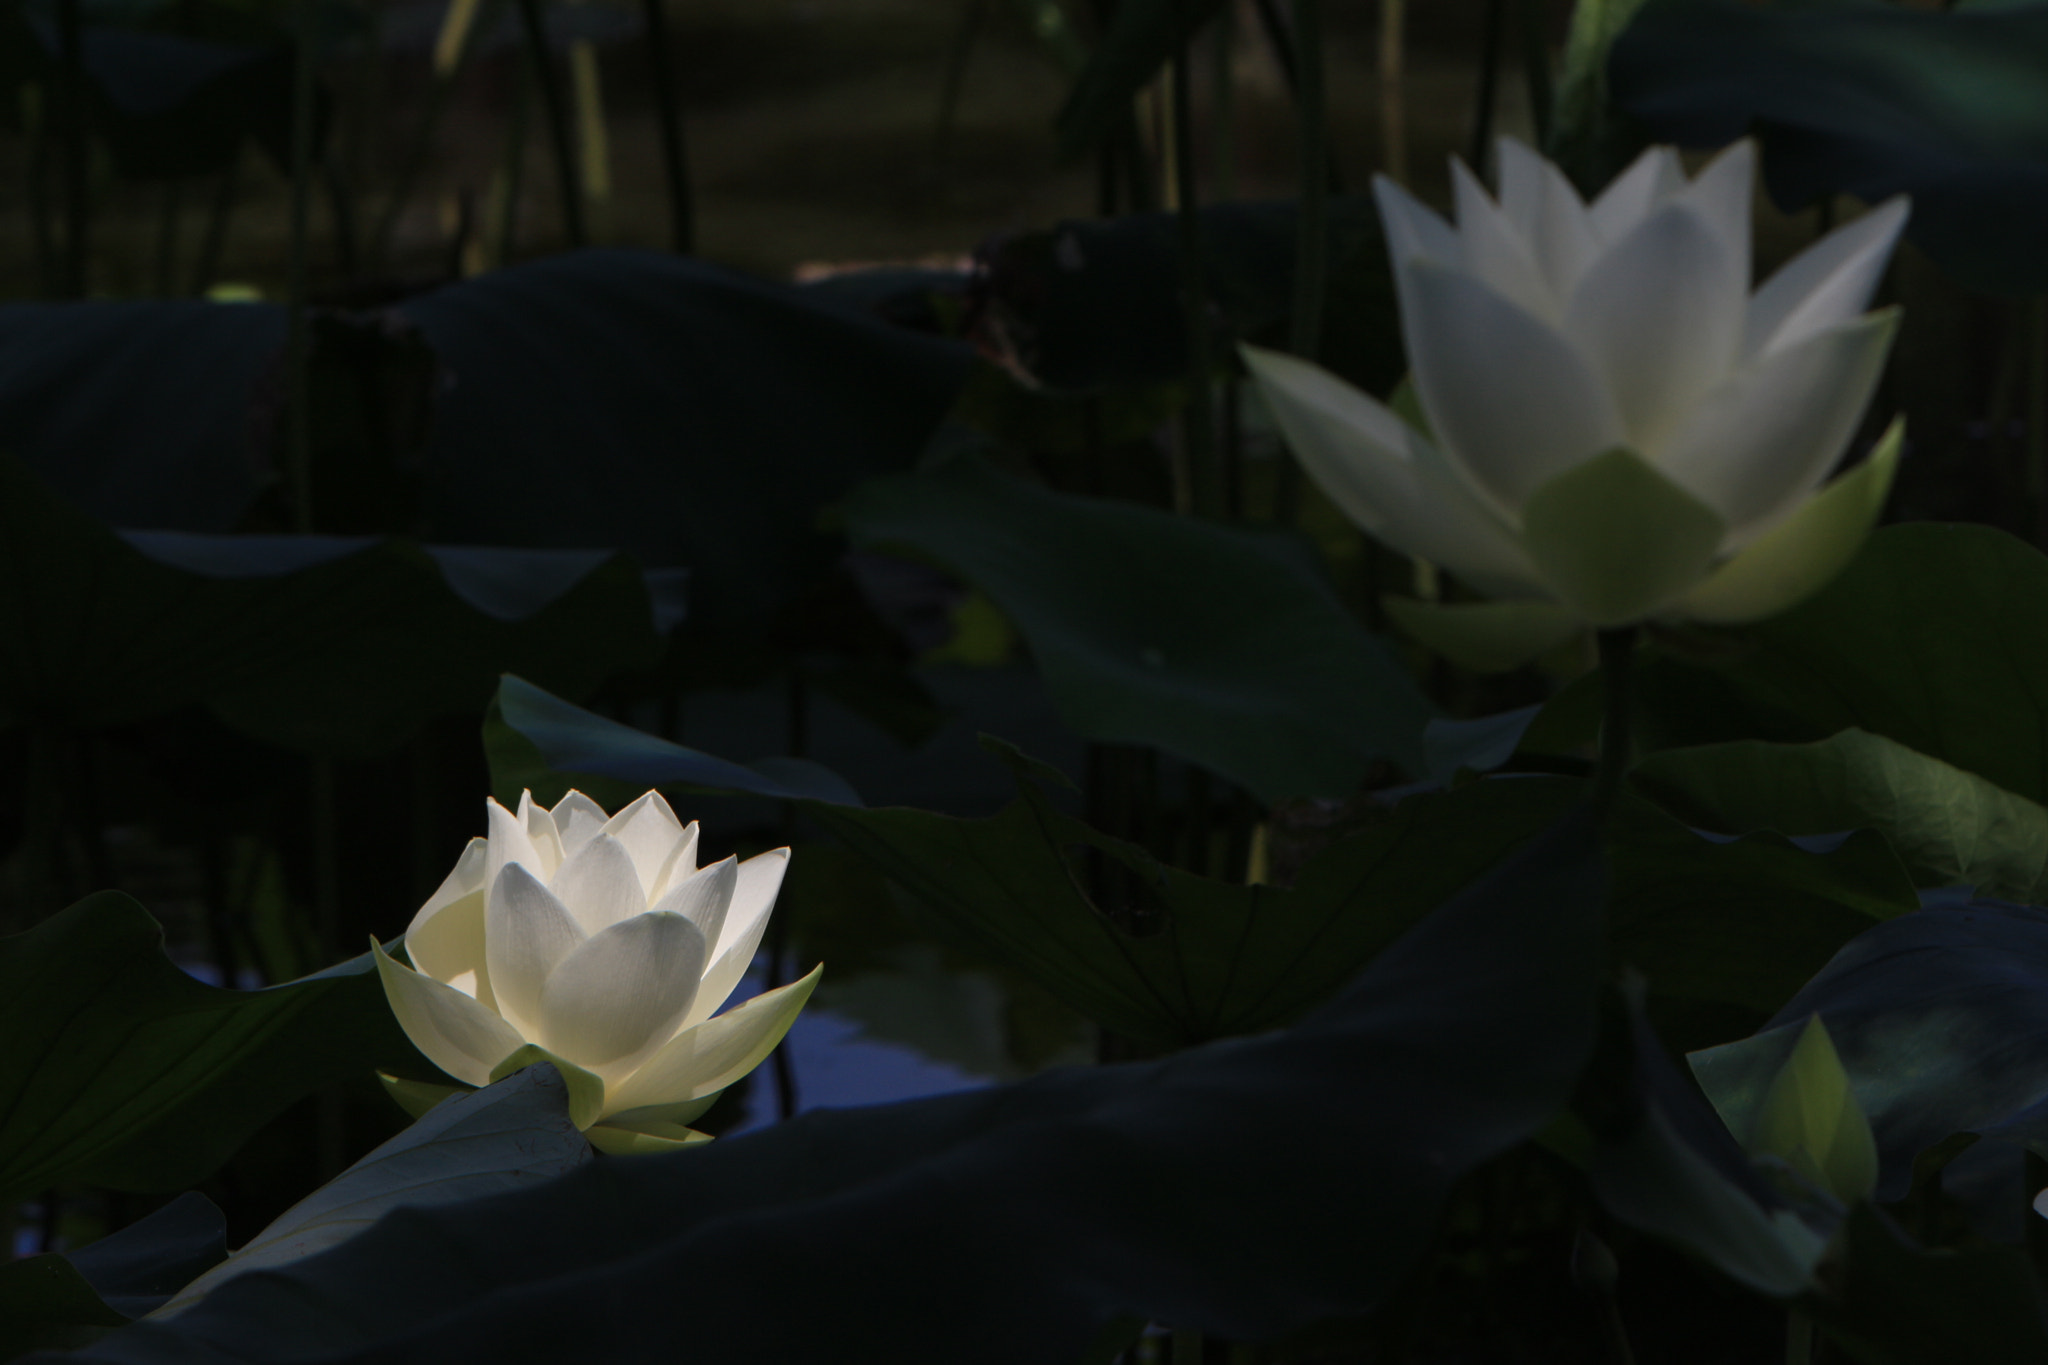 Canon EOS 100D (EOS Rebel SL1 / EOS Kiss X7) sample photo. White lotus photography